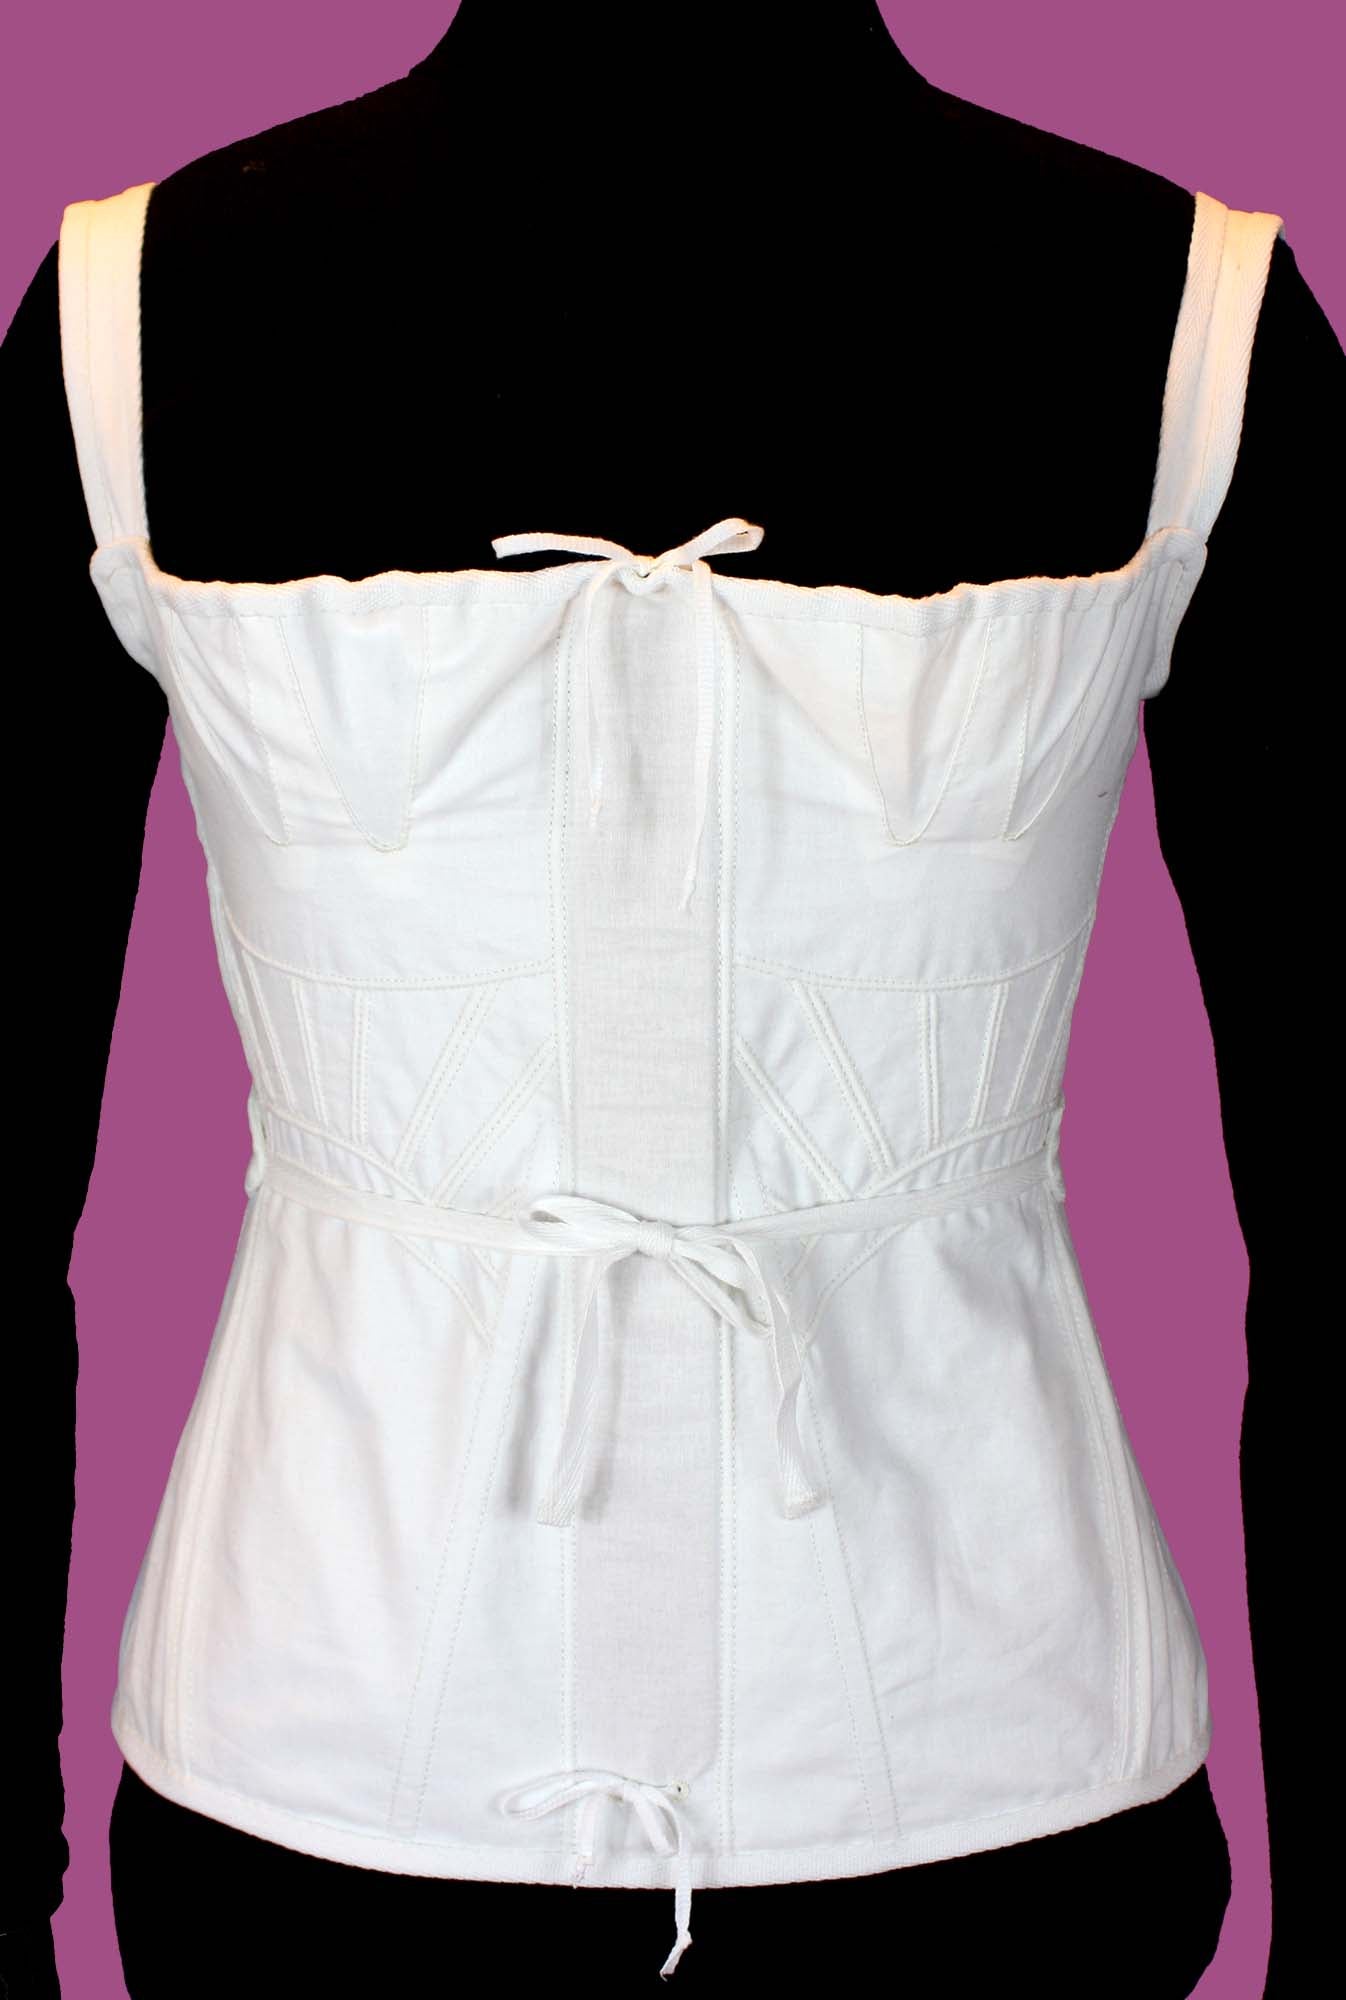 #0417 1830s Biedermeier Corset and Underwear Sewing Pattern Size US 8-30 (EU 34-56) paper pattern